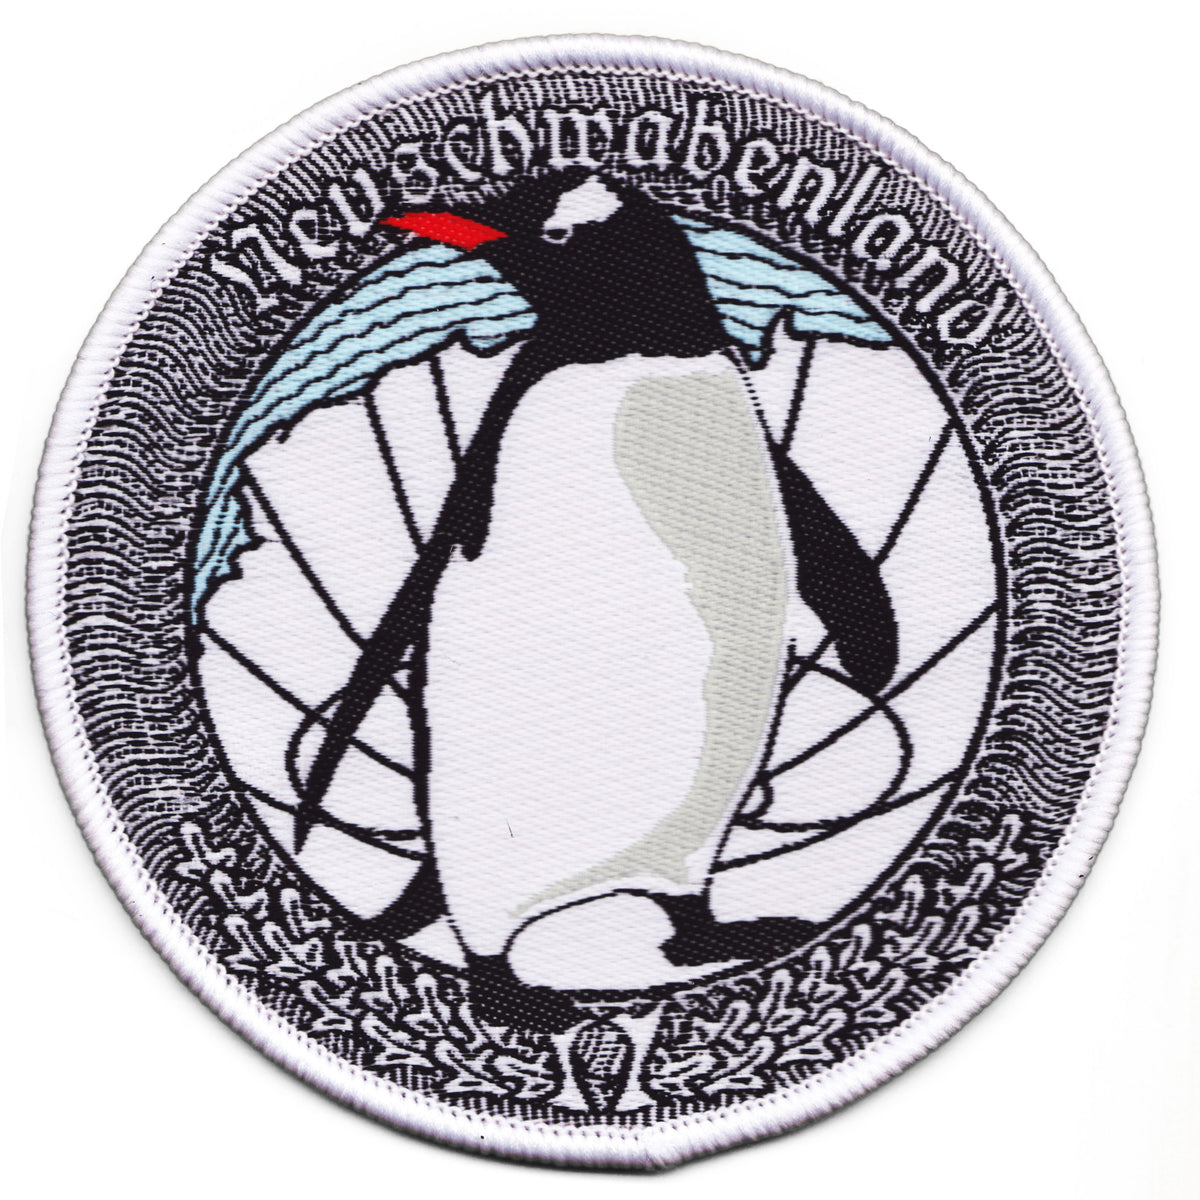 Neuschwabenland Pinguin Aufnäher